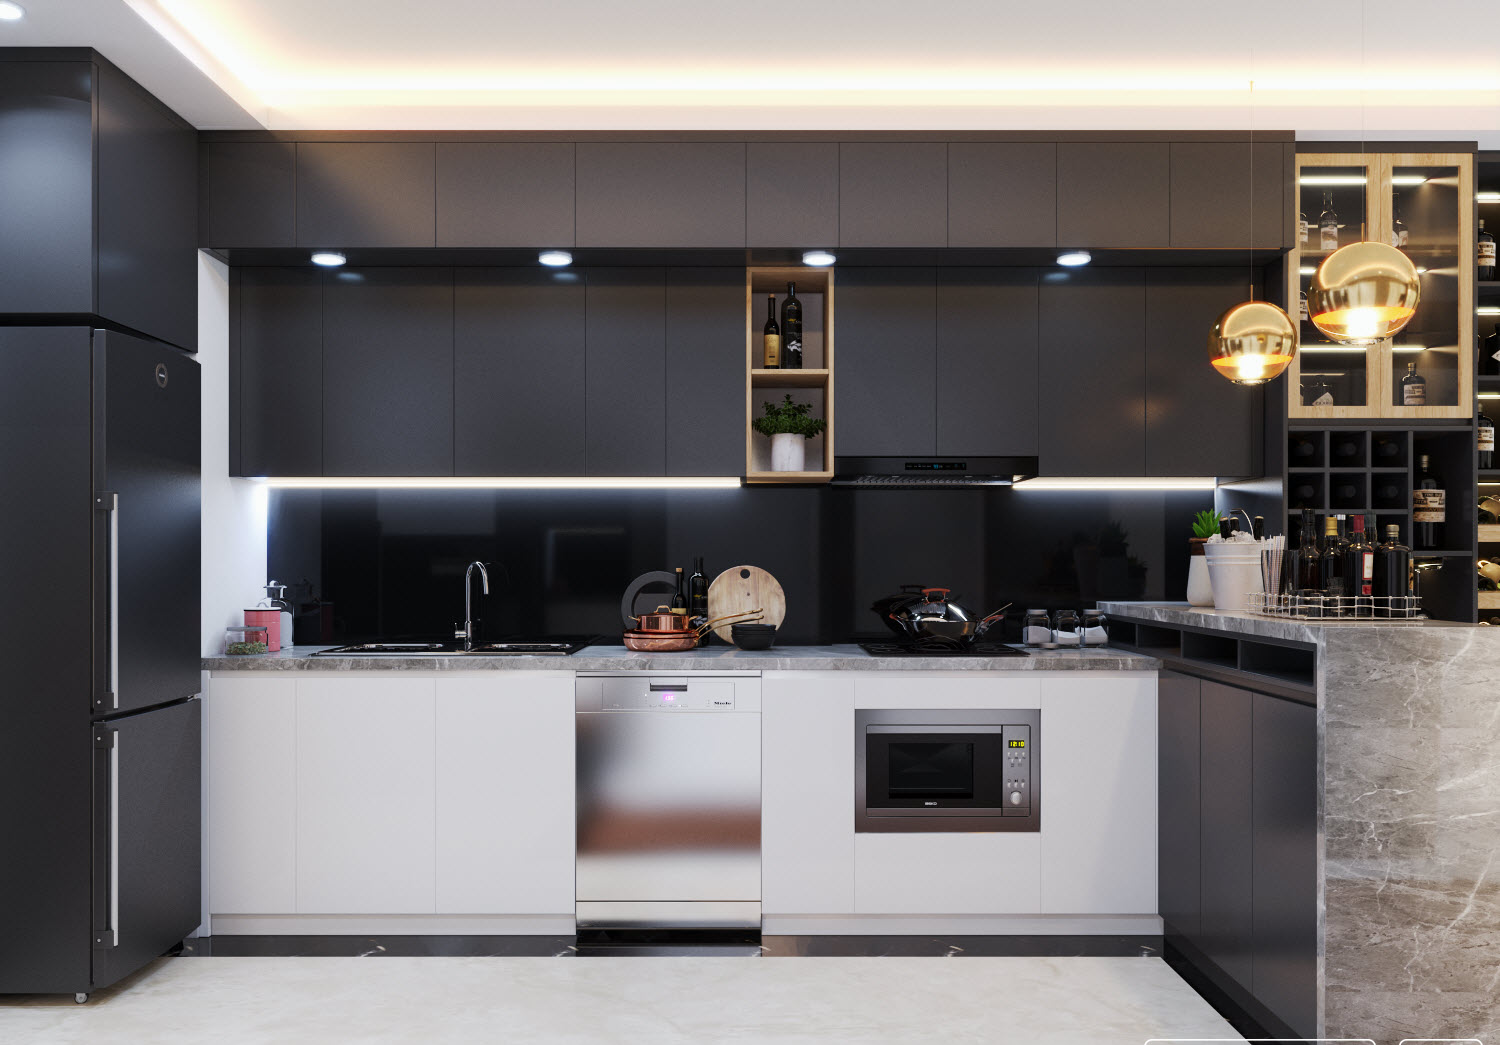 Kiến trúc sư khéo léo sử dụng sắc trắng tinh khôi cho tủ bếp dưới nhằm cân bằng bảng màu cho không gian tổng thể. Phòng bếp vì thế vẫn rất thoáng đãng, dịu mắt.